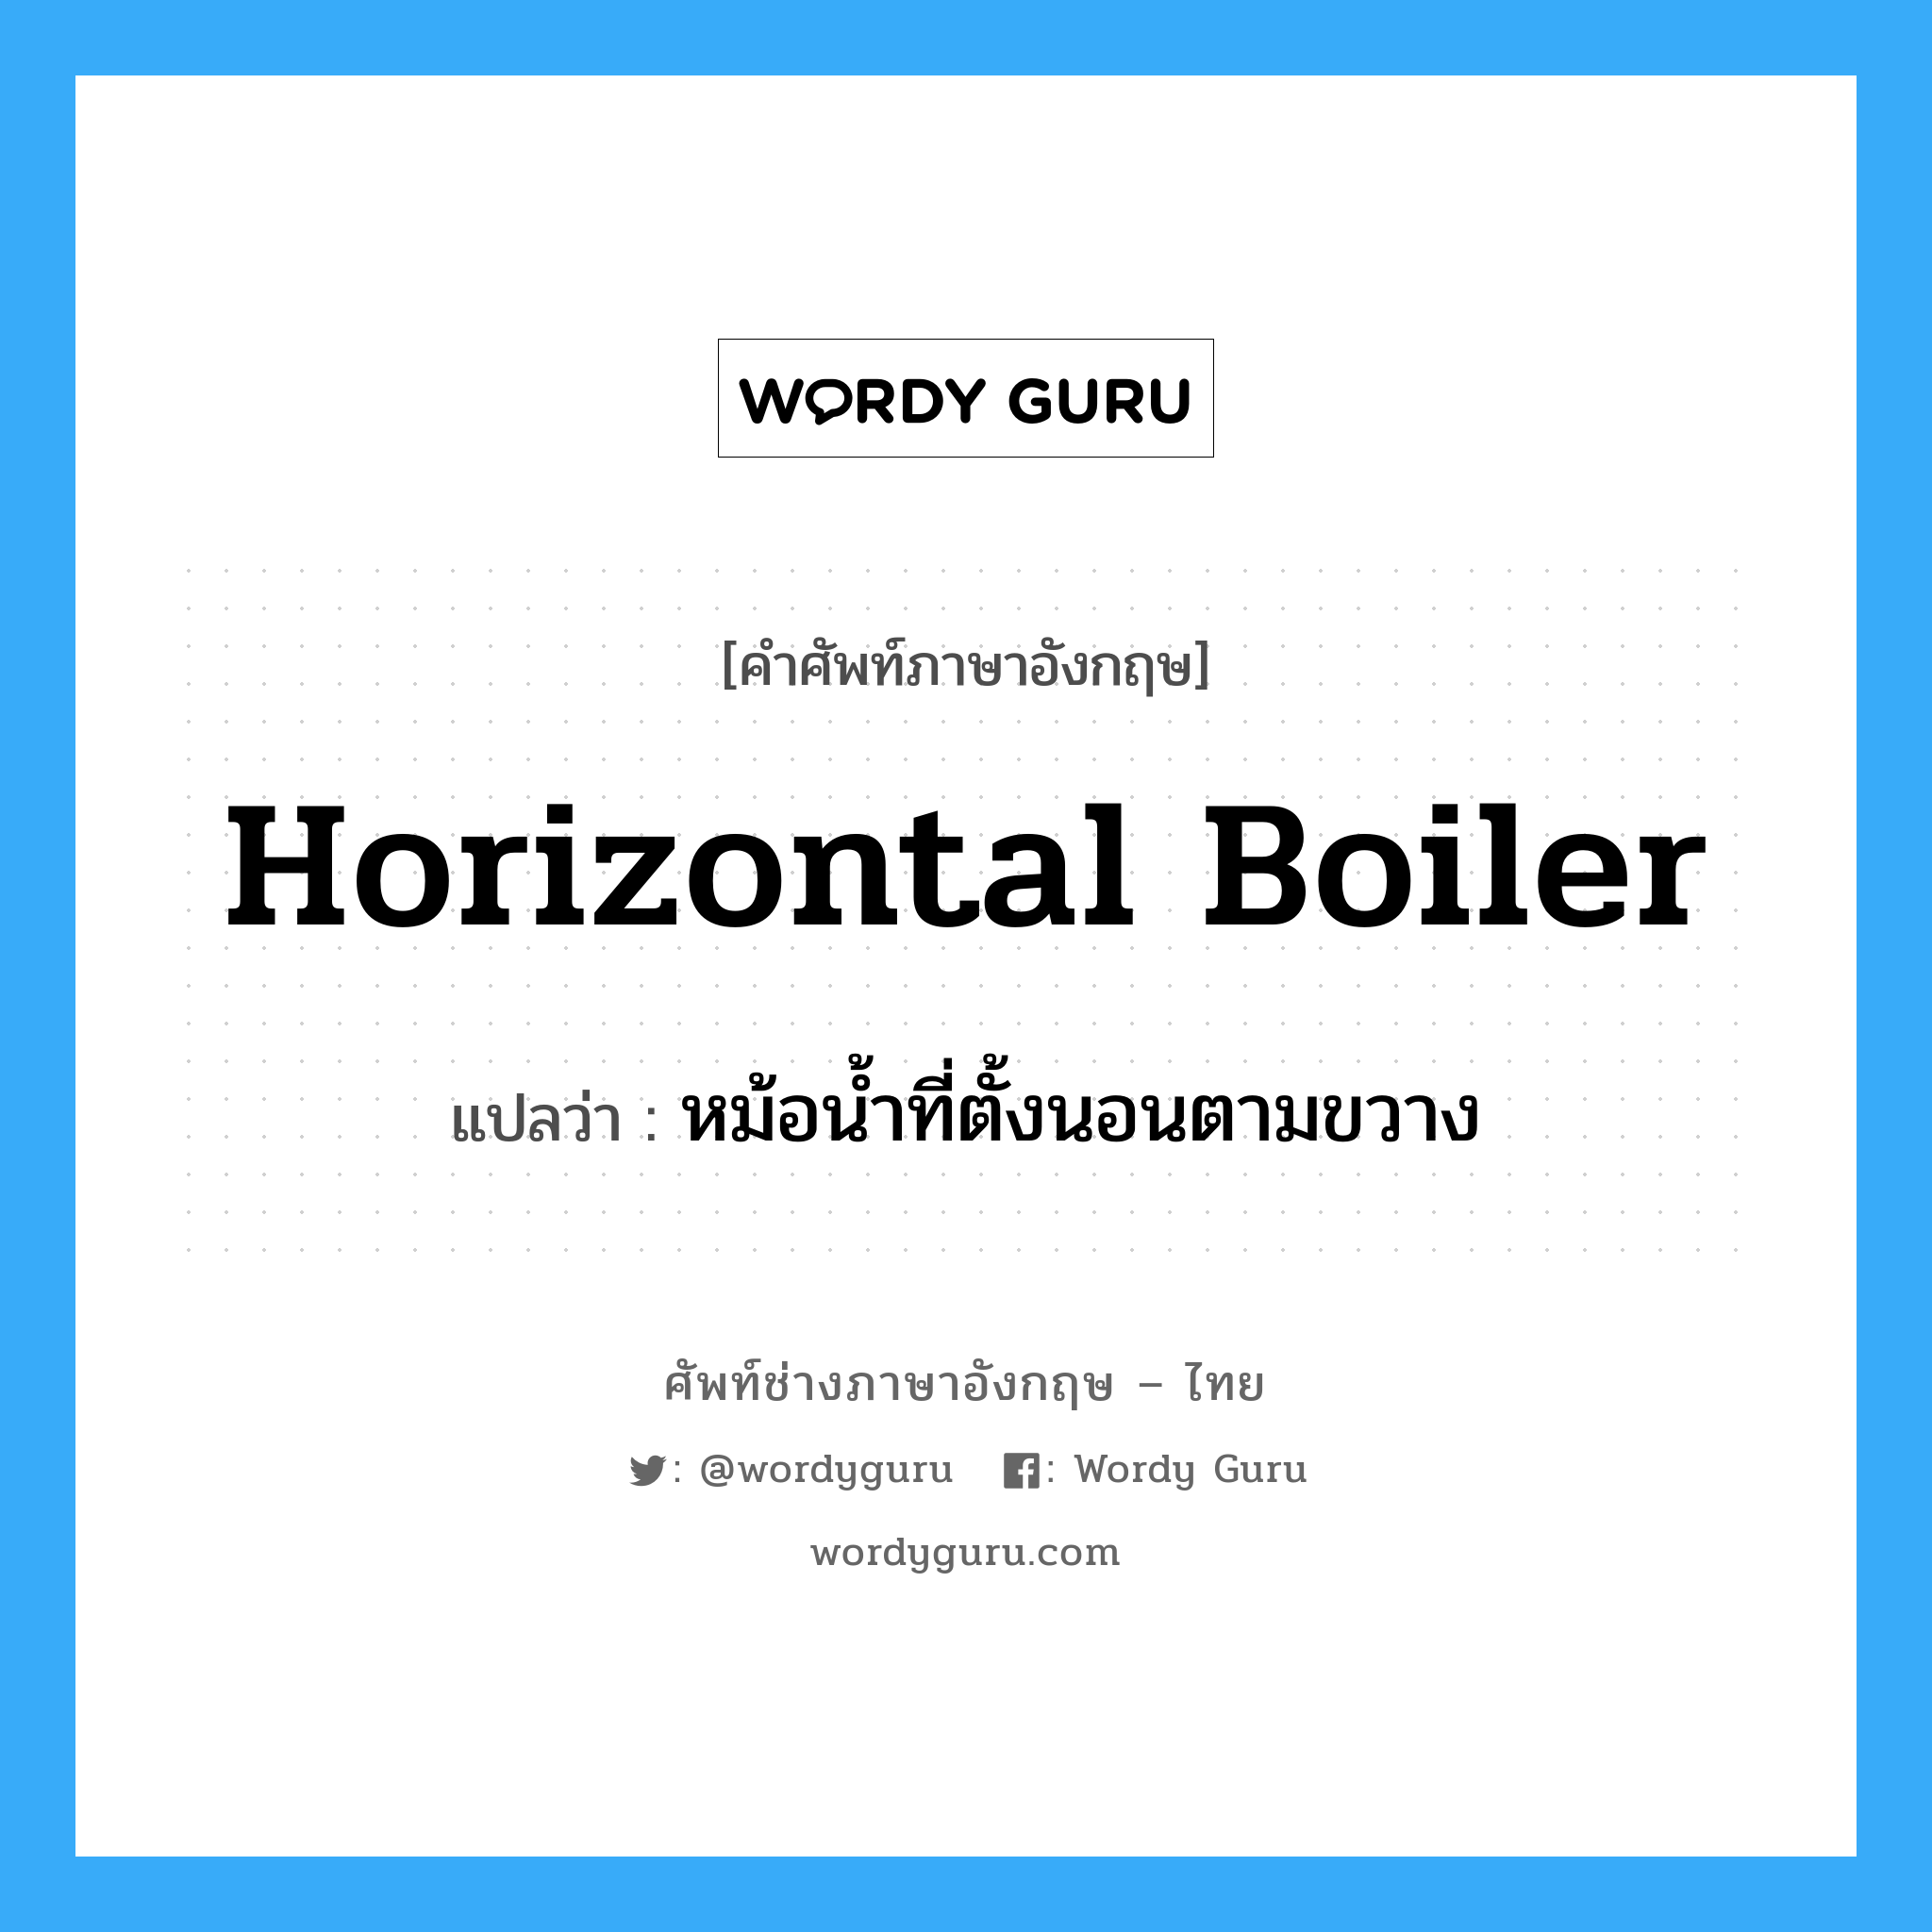 หม้อน้ำที่ตั้งนอนตามขวาง ภาษาอังกฤษ?, คำศัพท์ช่างภาษาอังกฤษ - ไทย หม้อน้ำที่ตั้งนอนตามขวาง คำศัพท์ภาษาอังกฤษ หม้อน้ำที่ตั้งนอนตามขวาง แปลว่า horizontal boiler